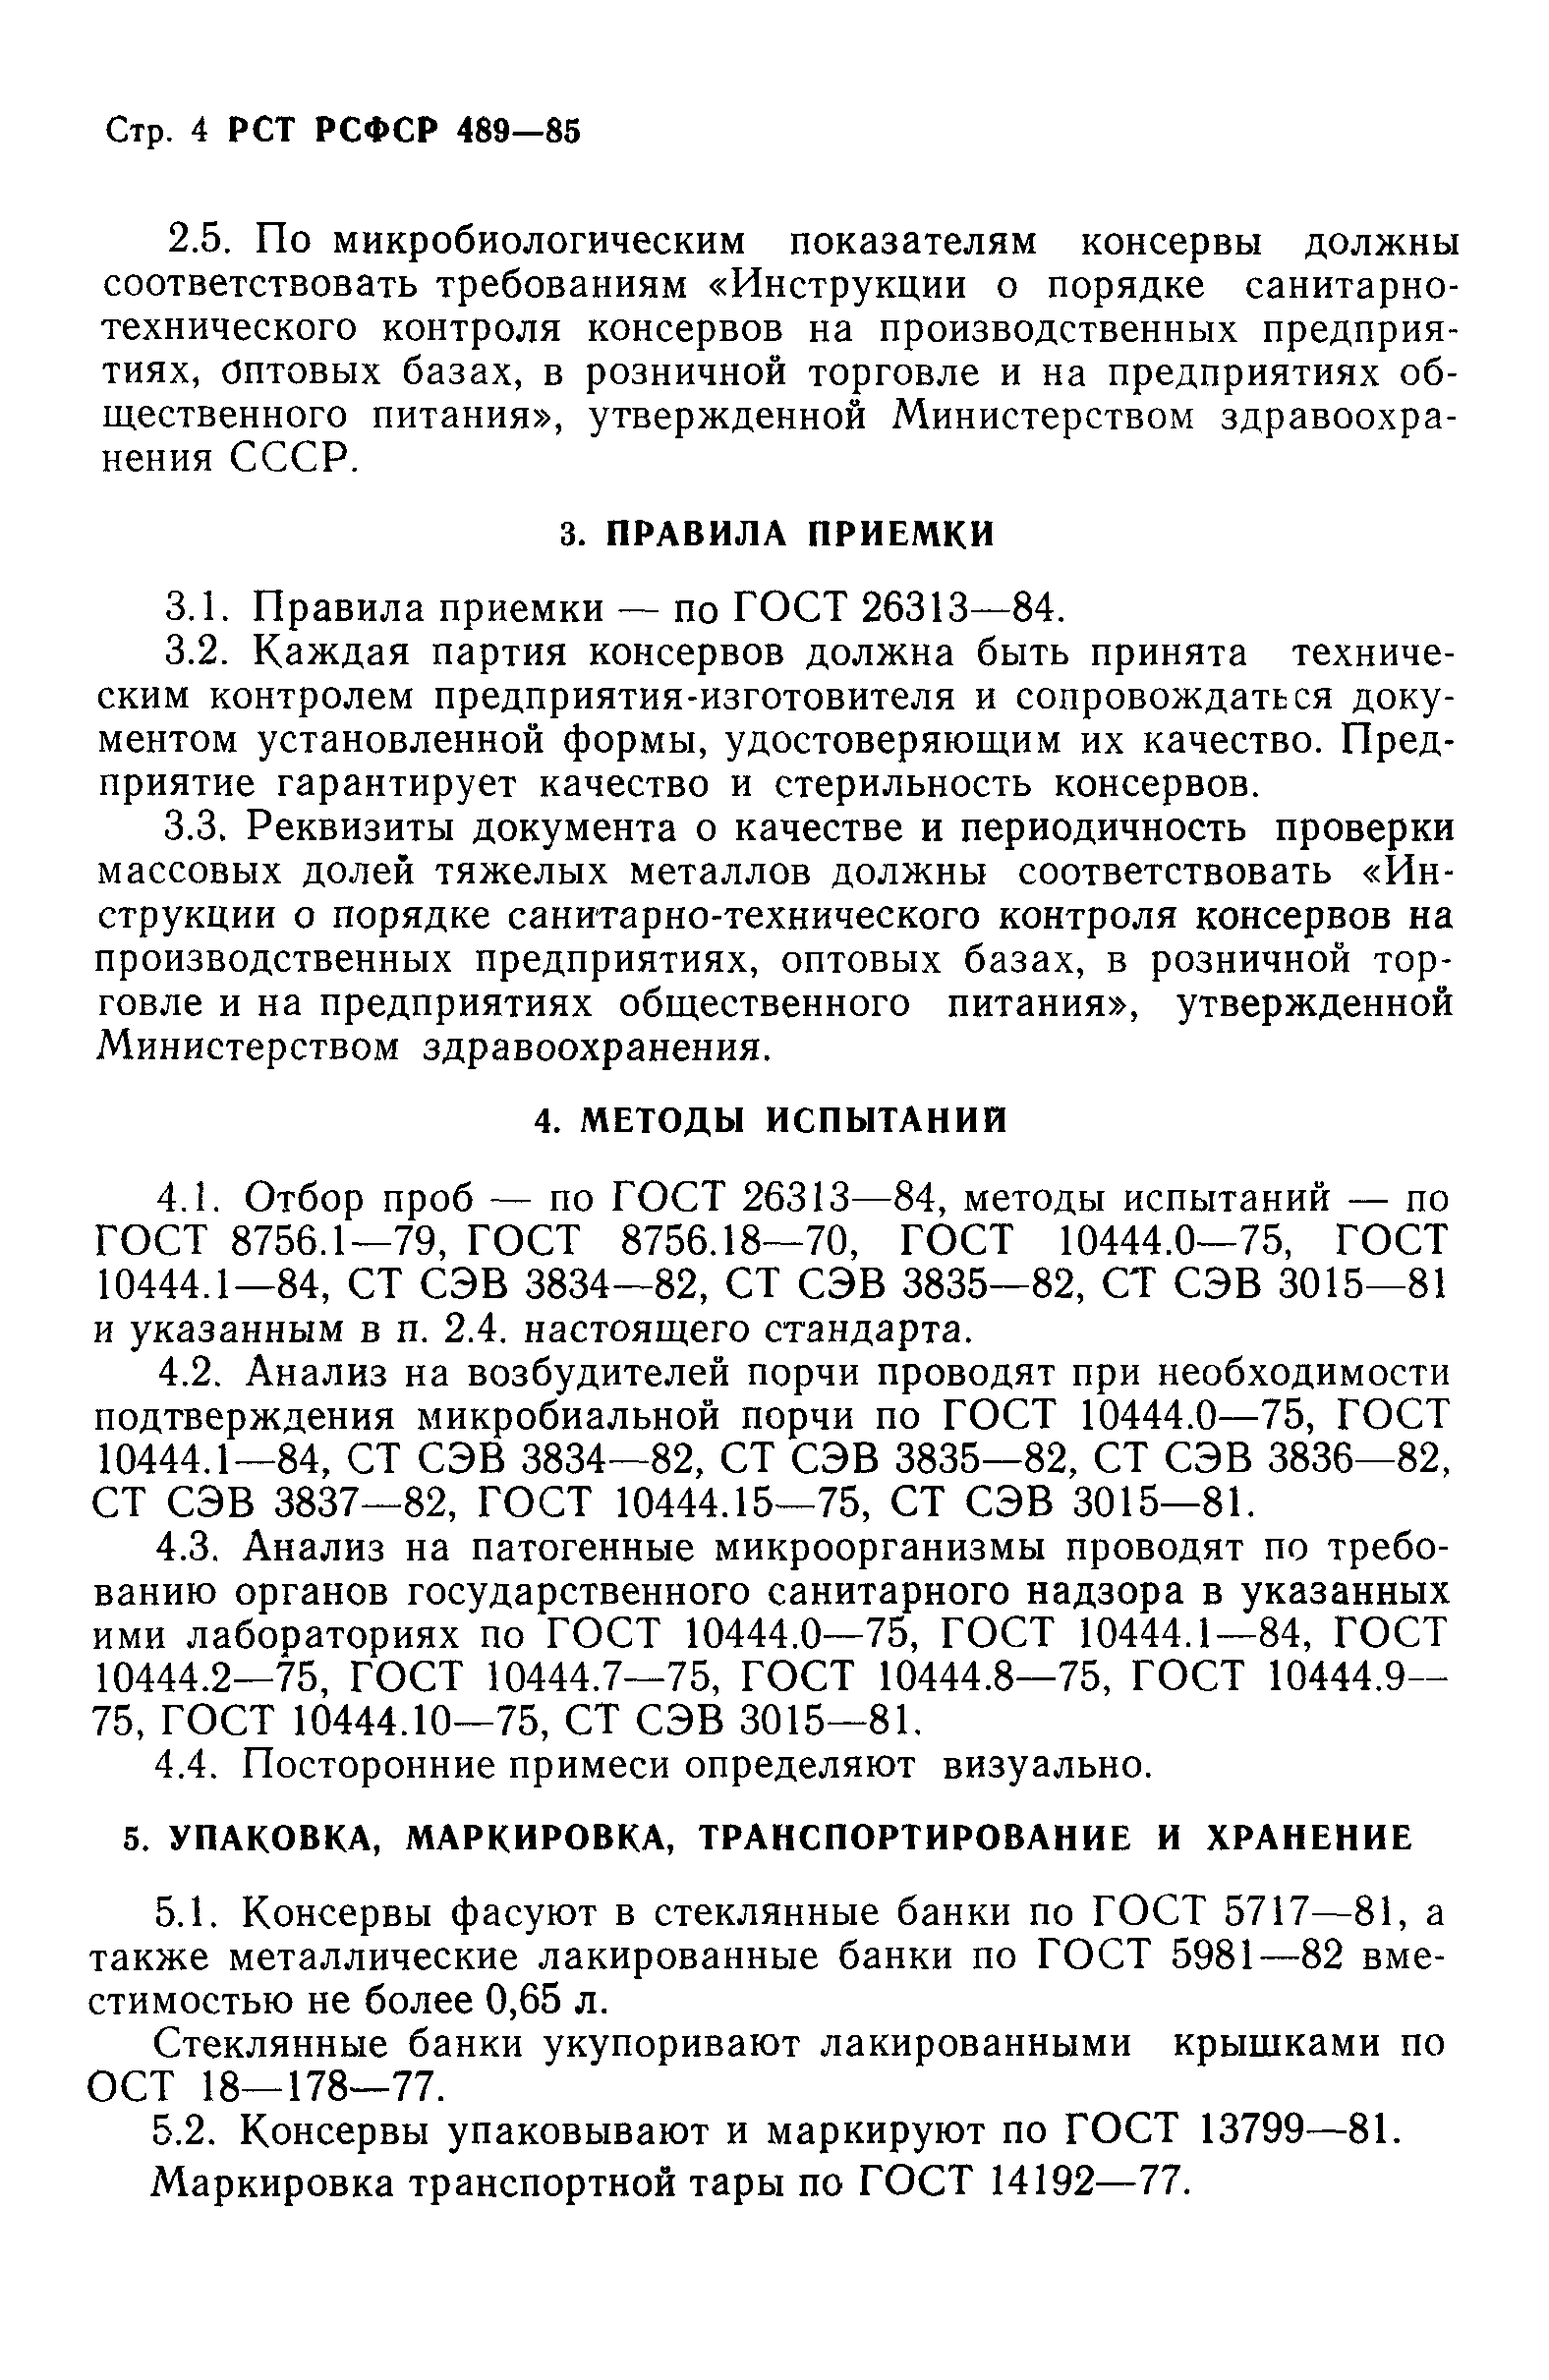 РСТ РСФСР 489-85